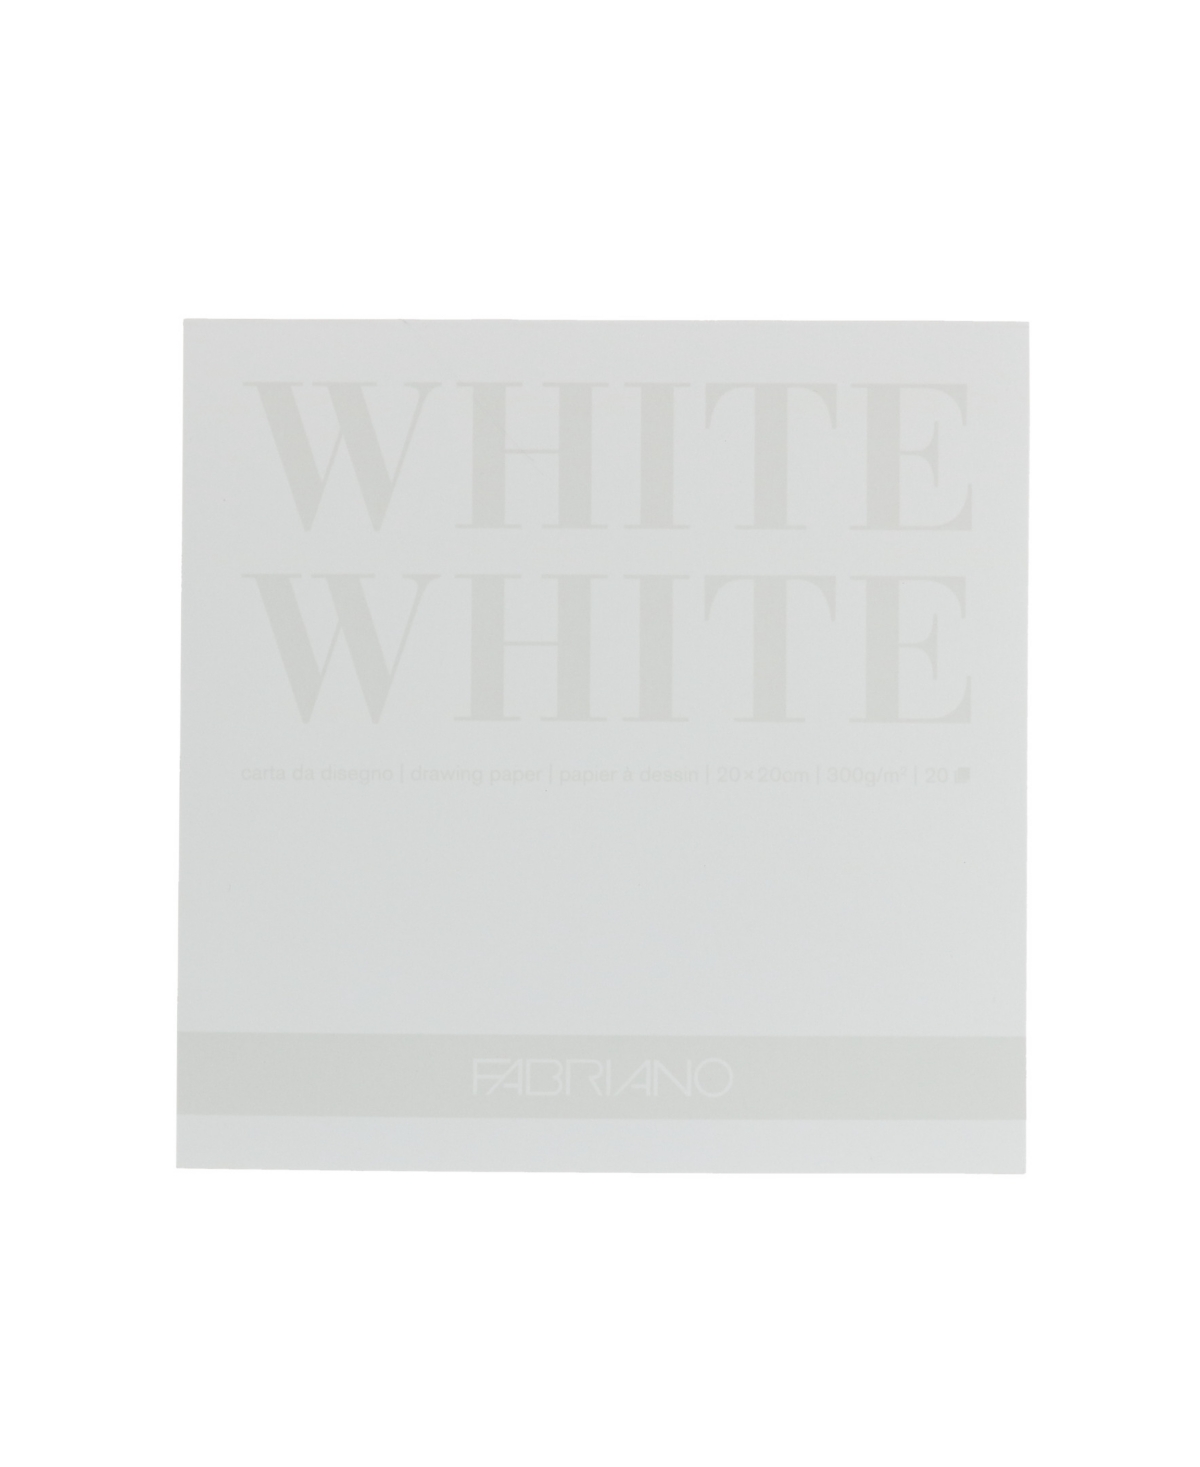 Pad, 8" x 8" - White